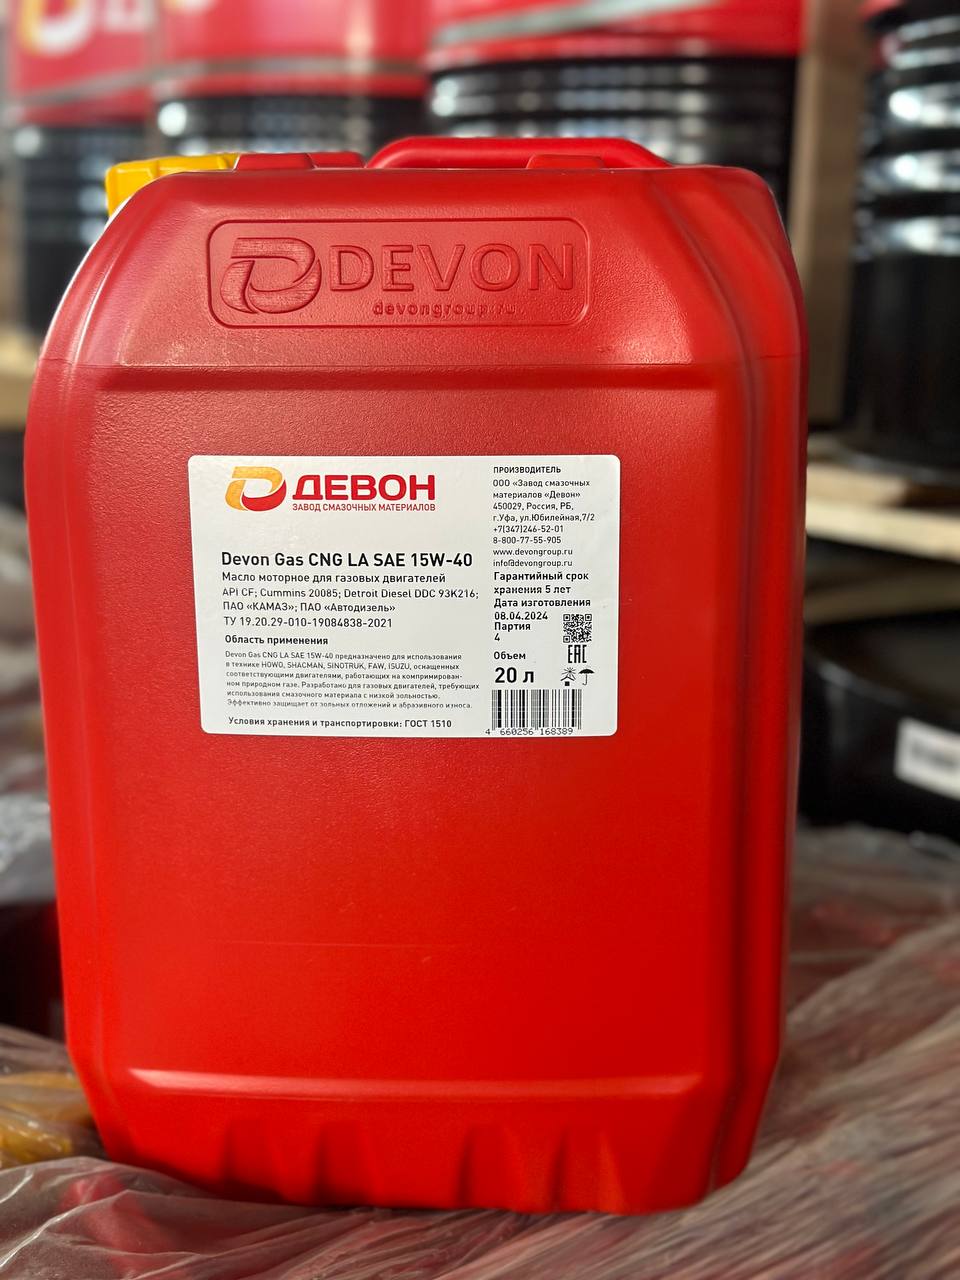 DEVON Gas CNG LA SAE 15W-40 -  Всесезонные малозольные моторные масла для техники, работающей на сжатом природном газе CNG (метане)